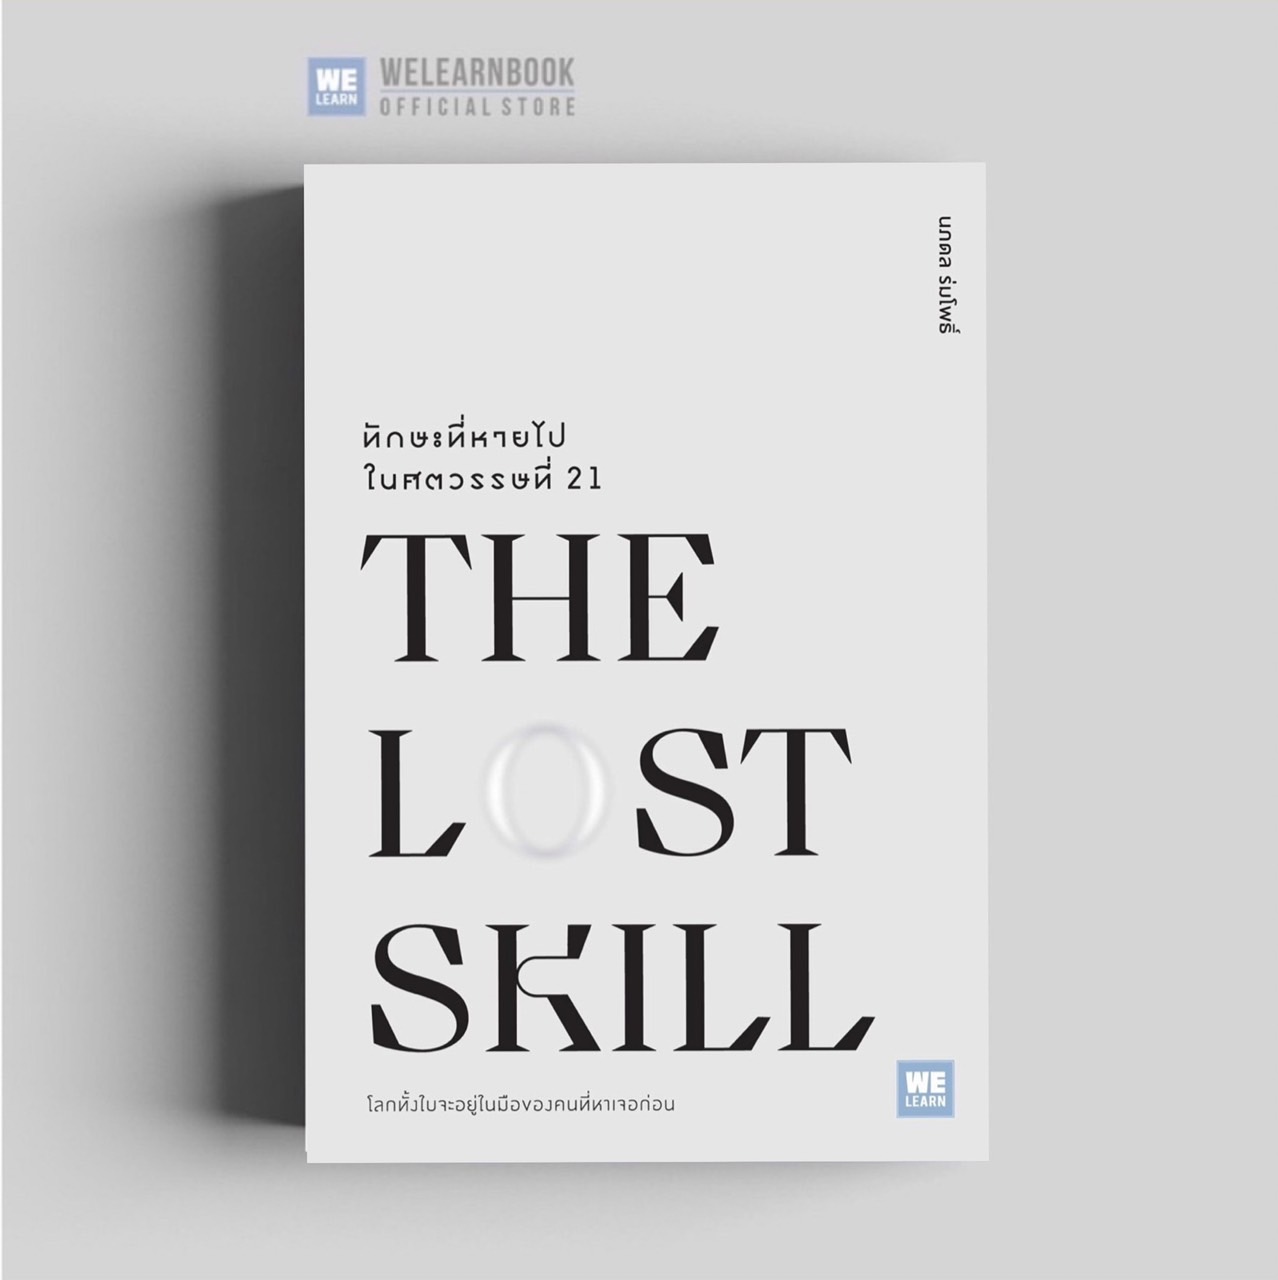 หนังสือพัฒนาตัวเอง ทักษะที่หายไปในศตวรรษที่ 21 (The Lost Skill ) วีเลิร์น welearn welearnbook